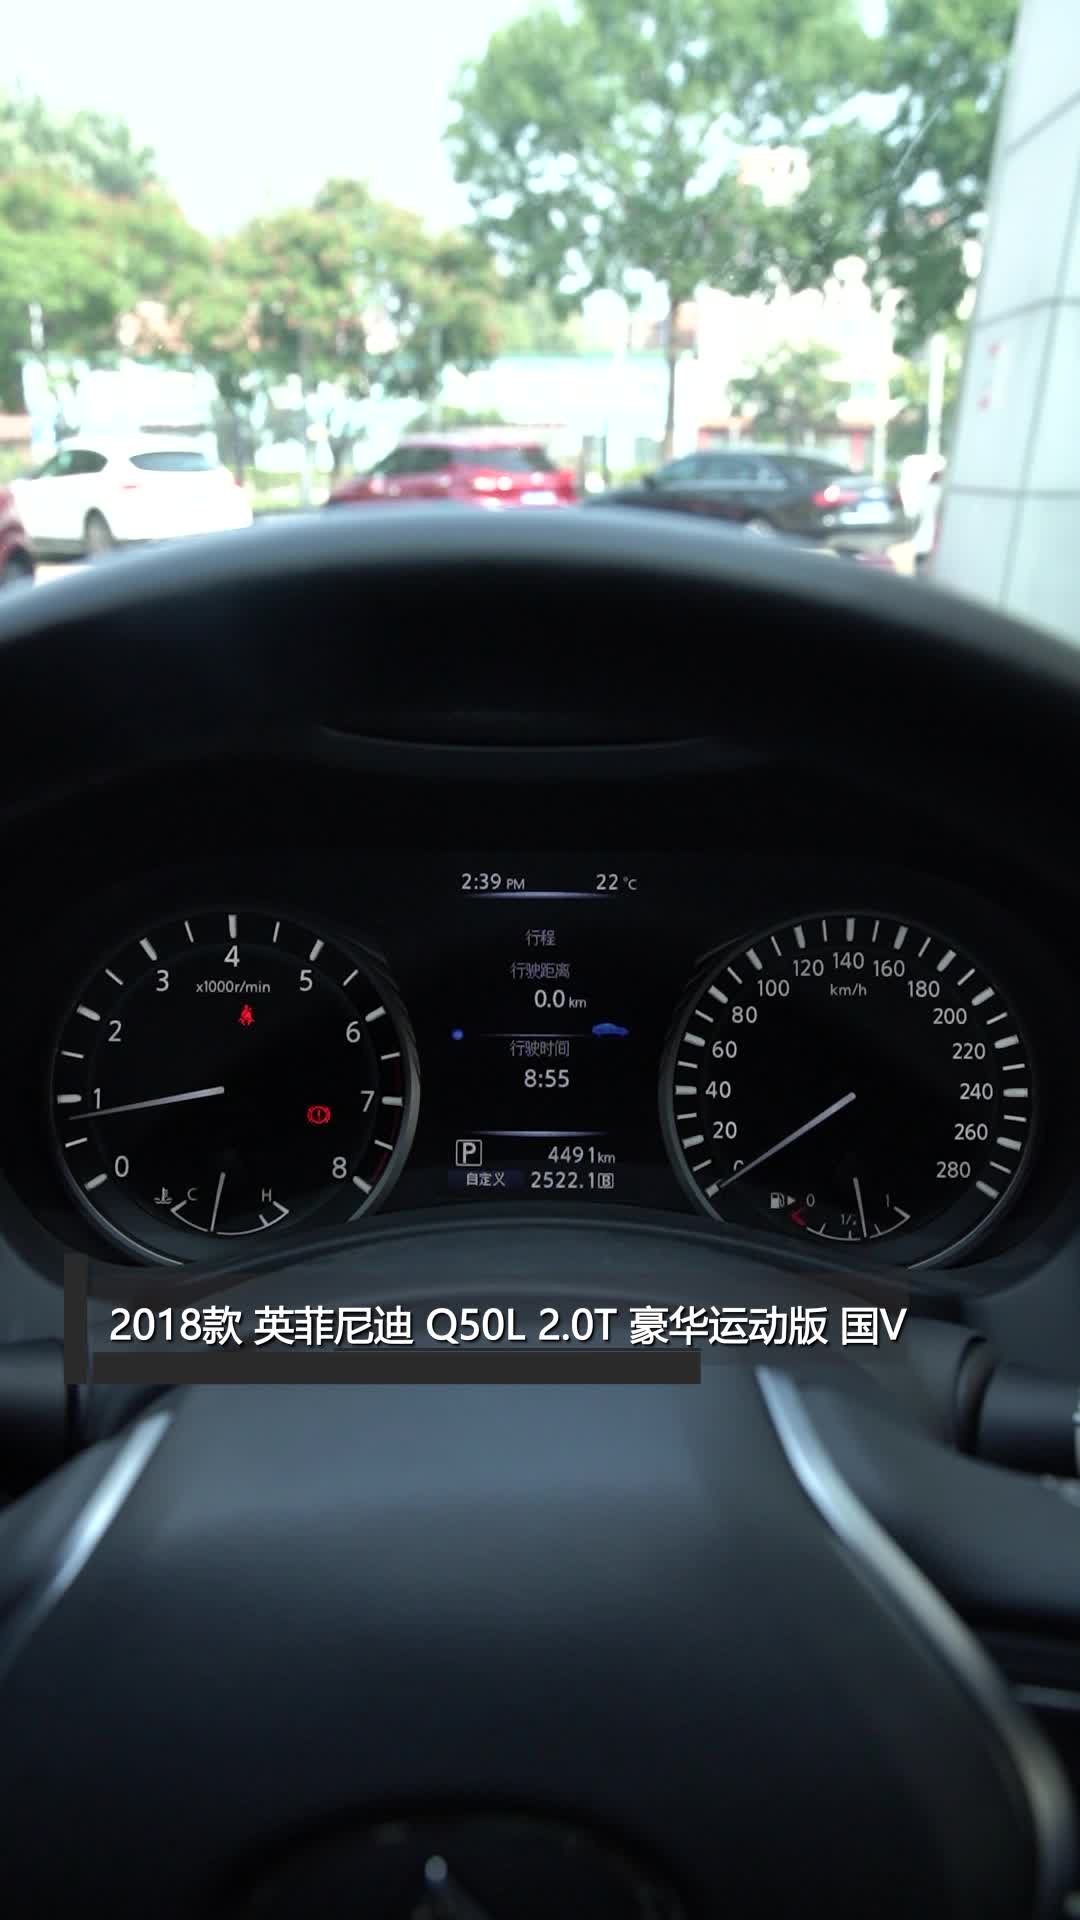 【视频】仪表盘_2018款 英菲尼迪q50l 仪表盘_易车